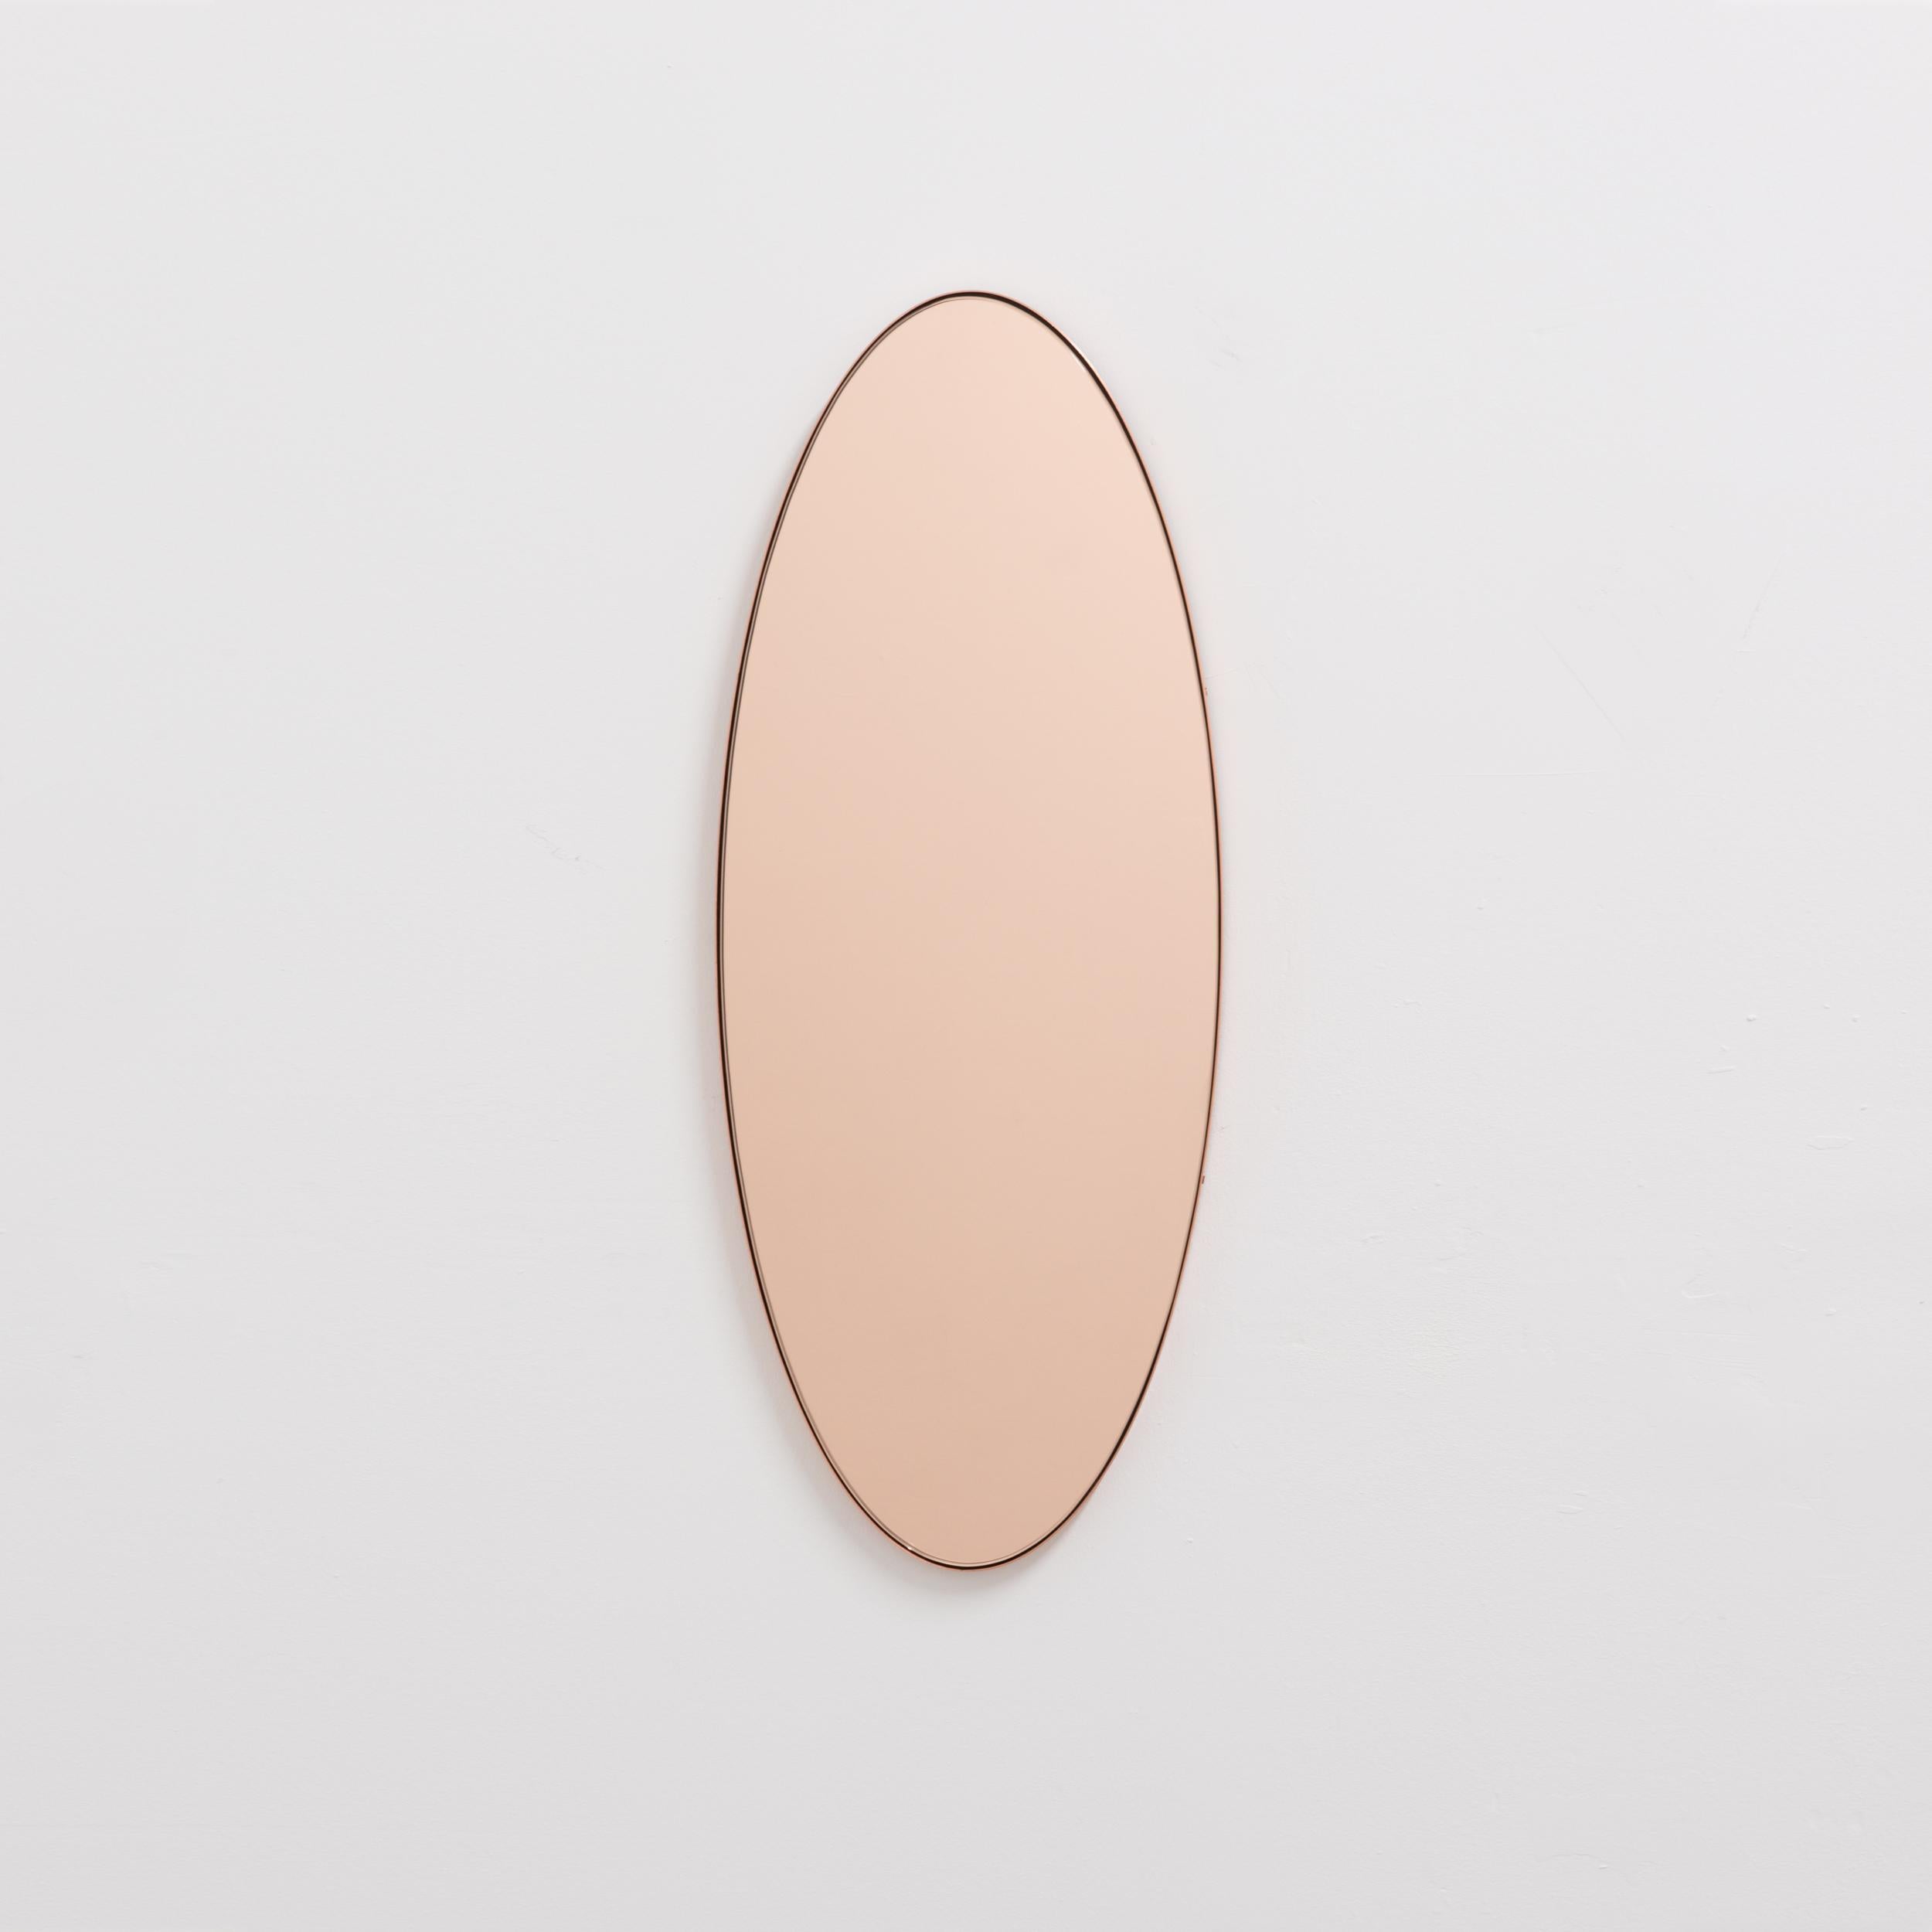 Miroir contemporain de forme ovale en or rose/pêche avec un élégant cadre en cuivre. Conçu et fabriqué à la main à Londres, au Royaume-Uni. Livré entièrement équipé avec un système d'accrochage spécialisé pour une installation facile.

Les miroirs